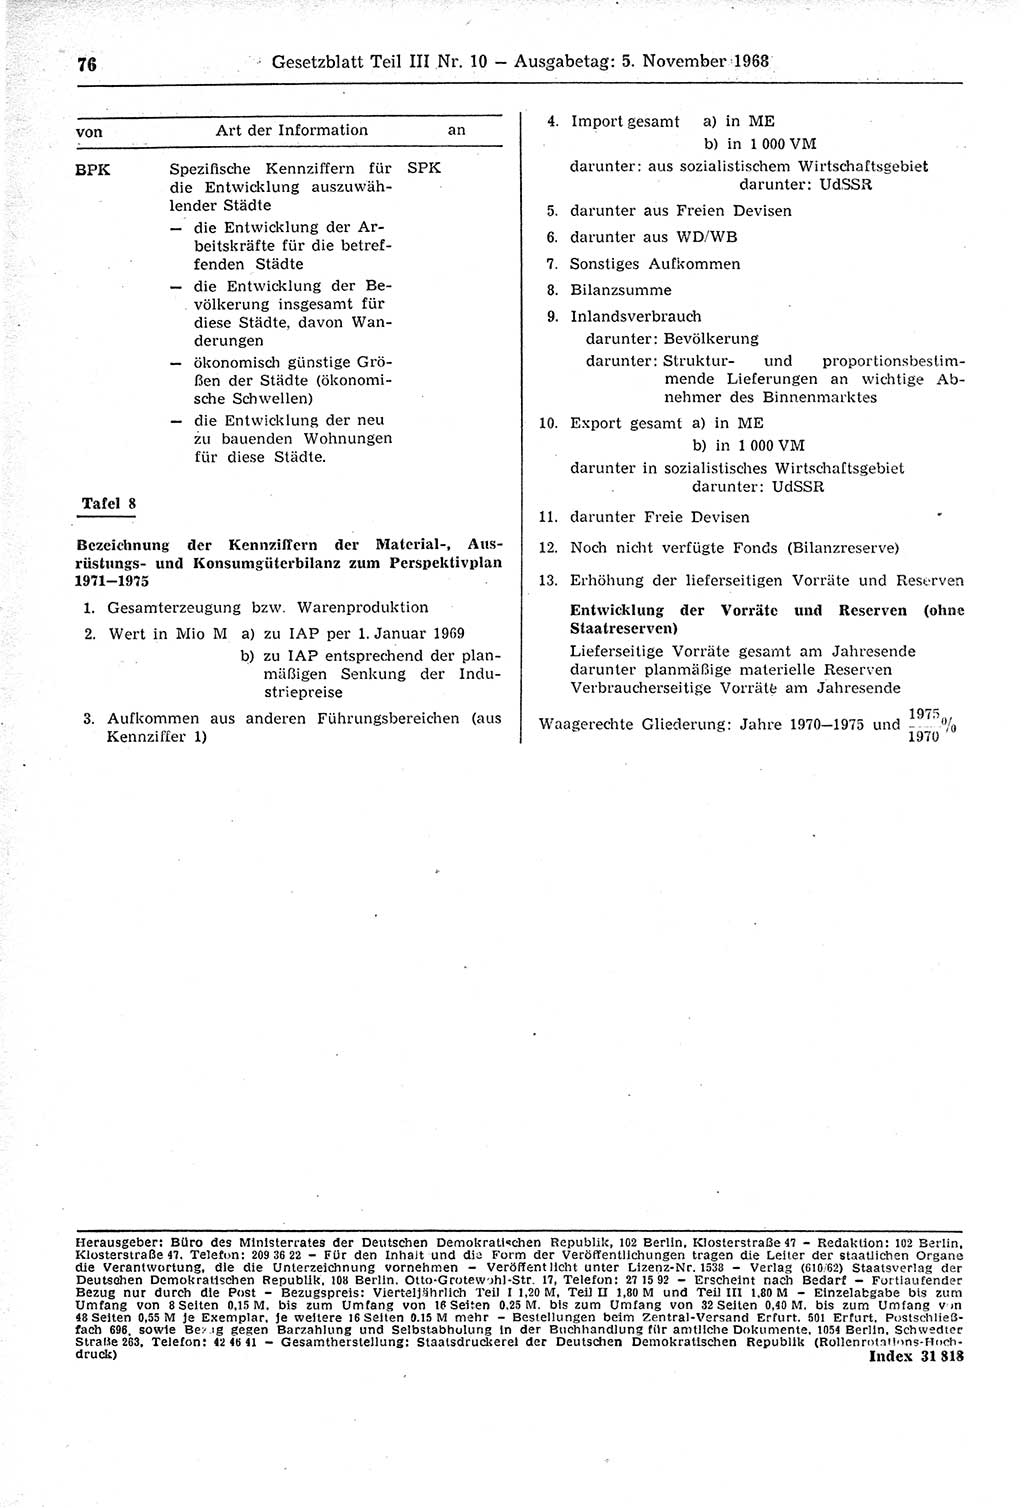 Gesetzblatt (GBl.) der Deutschen Demokratischen Republik (DDR) Teil ⅠⅠⅠ 1968, Seite 76 (GBl. DDR ⅠⅠⅠ 1968, S. 76)